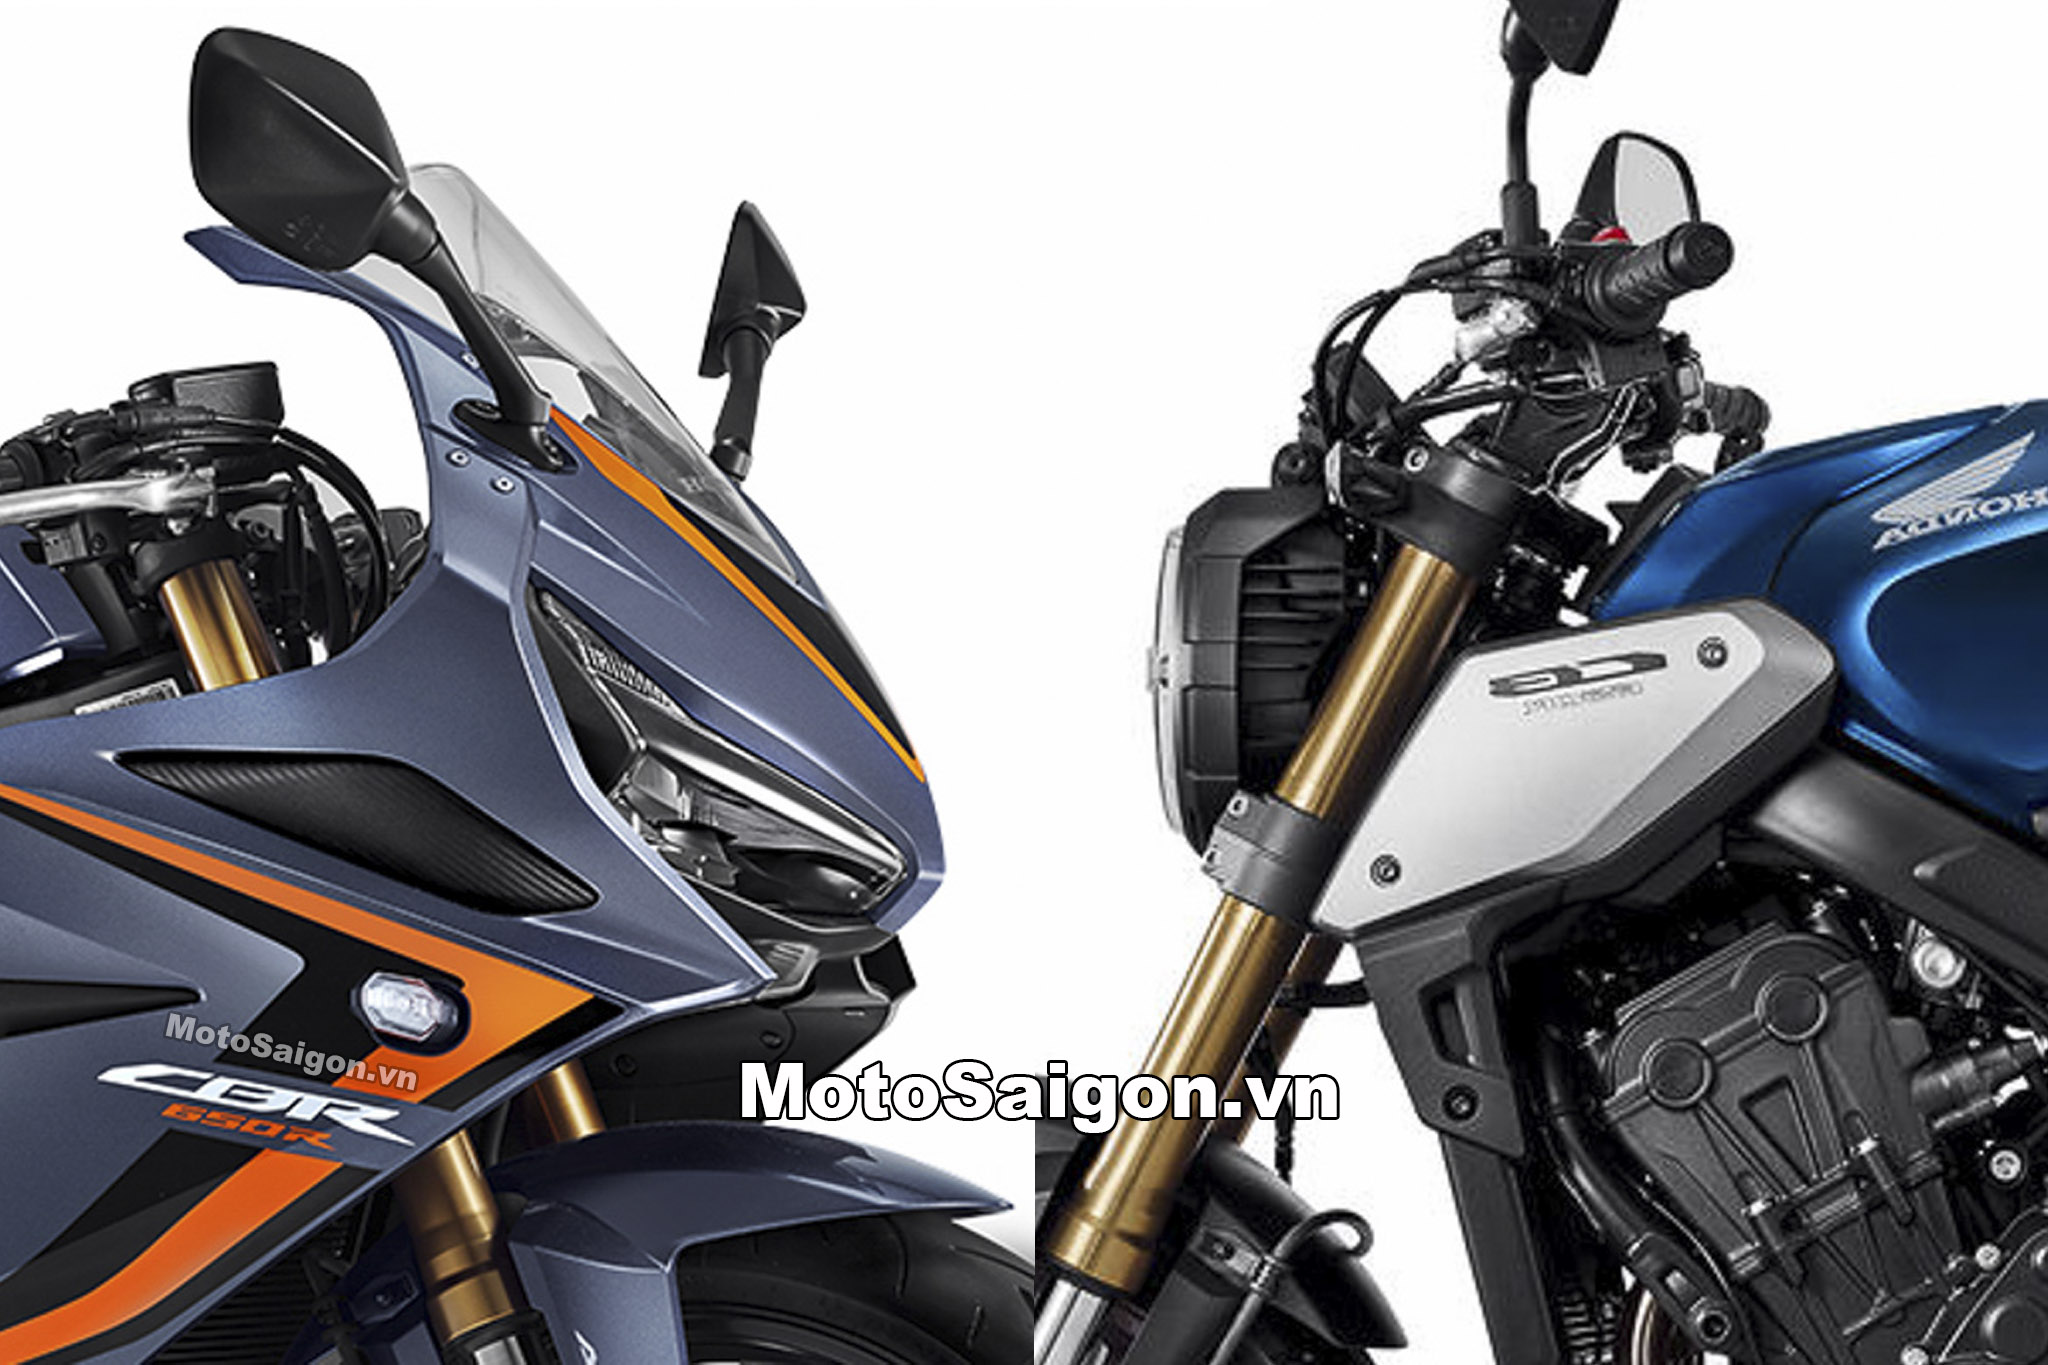 Honda CB650R CBR650R 2020 có gì mới? sắp có giá bán tại Việt Nam -  Motosaigon